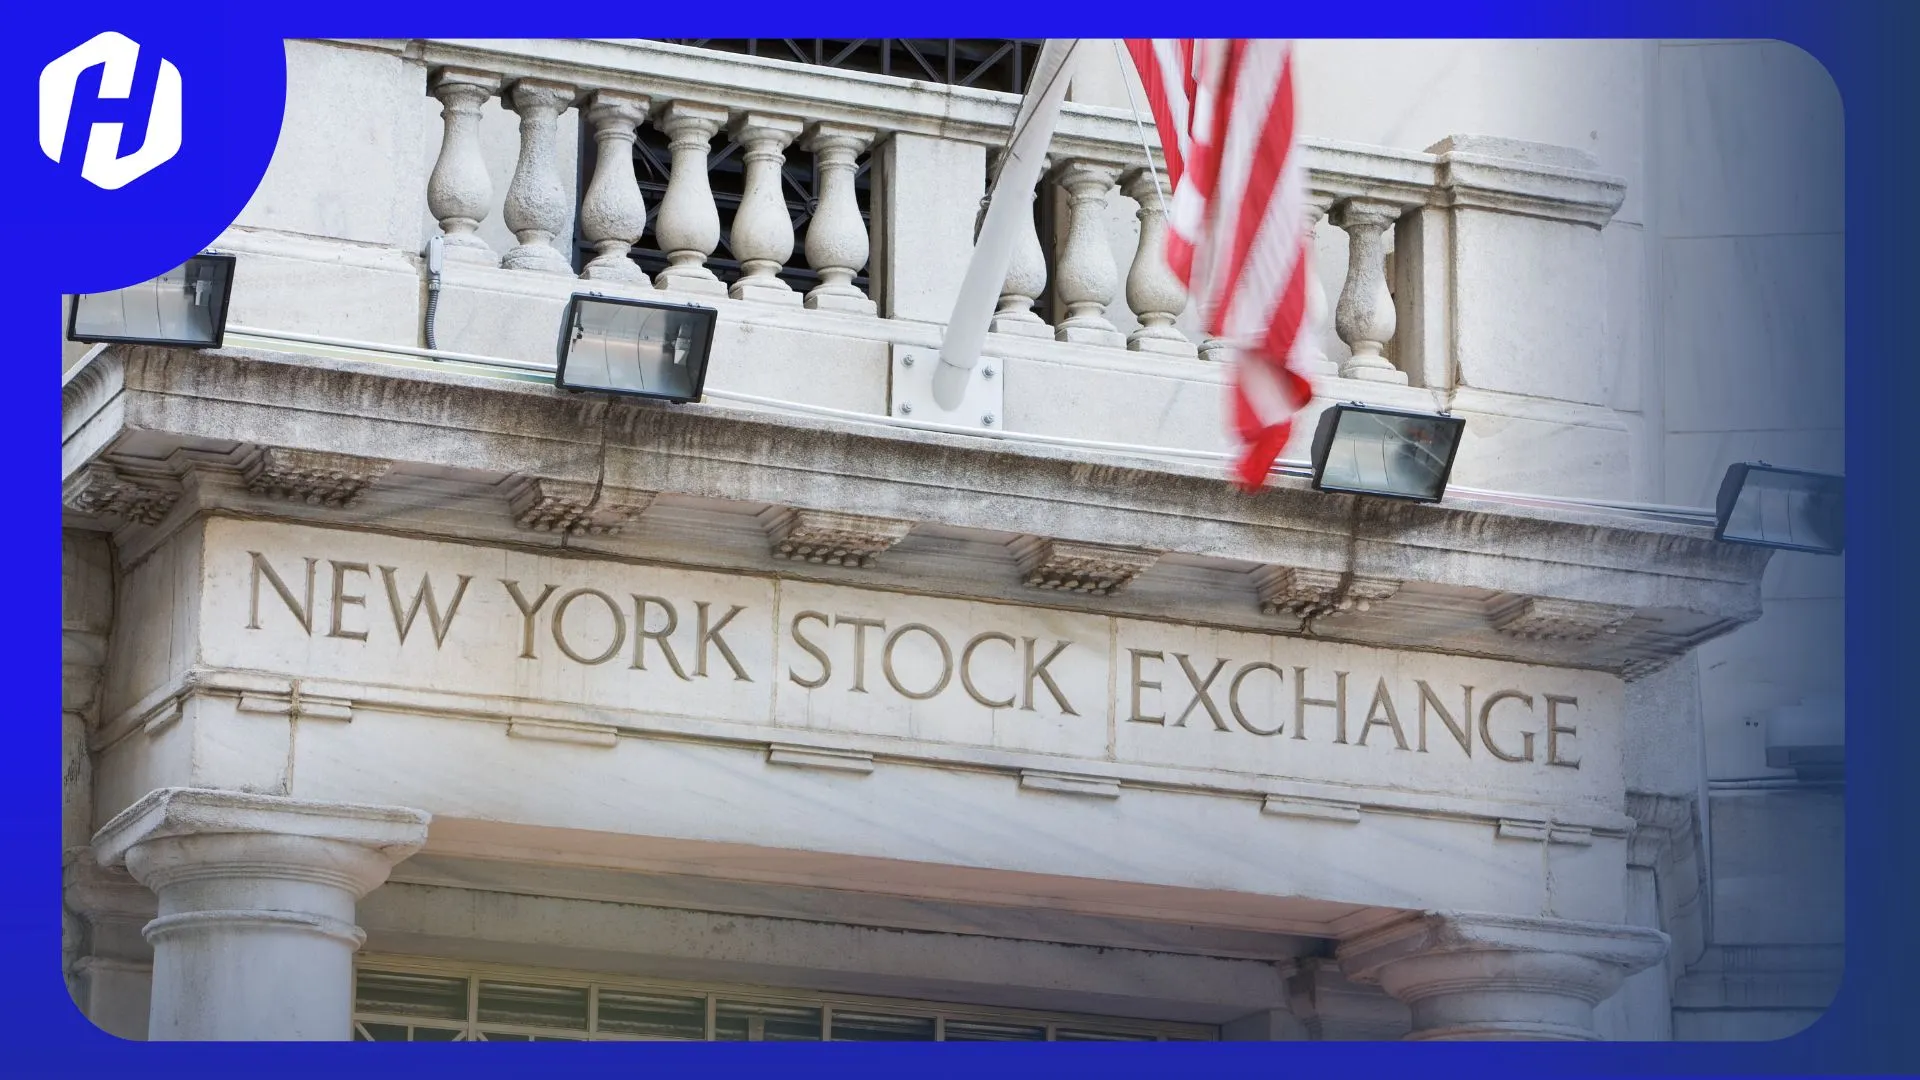 Mengenal New York Stock Exchange NYSE, bursa efek Amerika Serikat